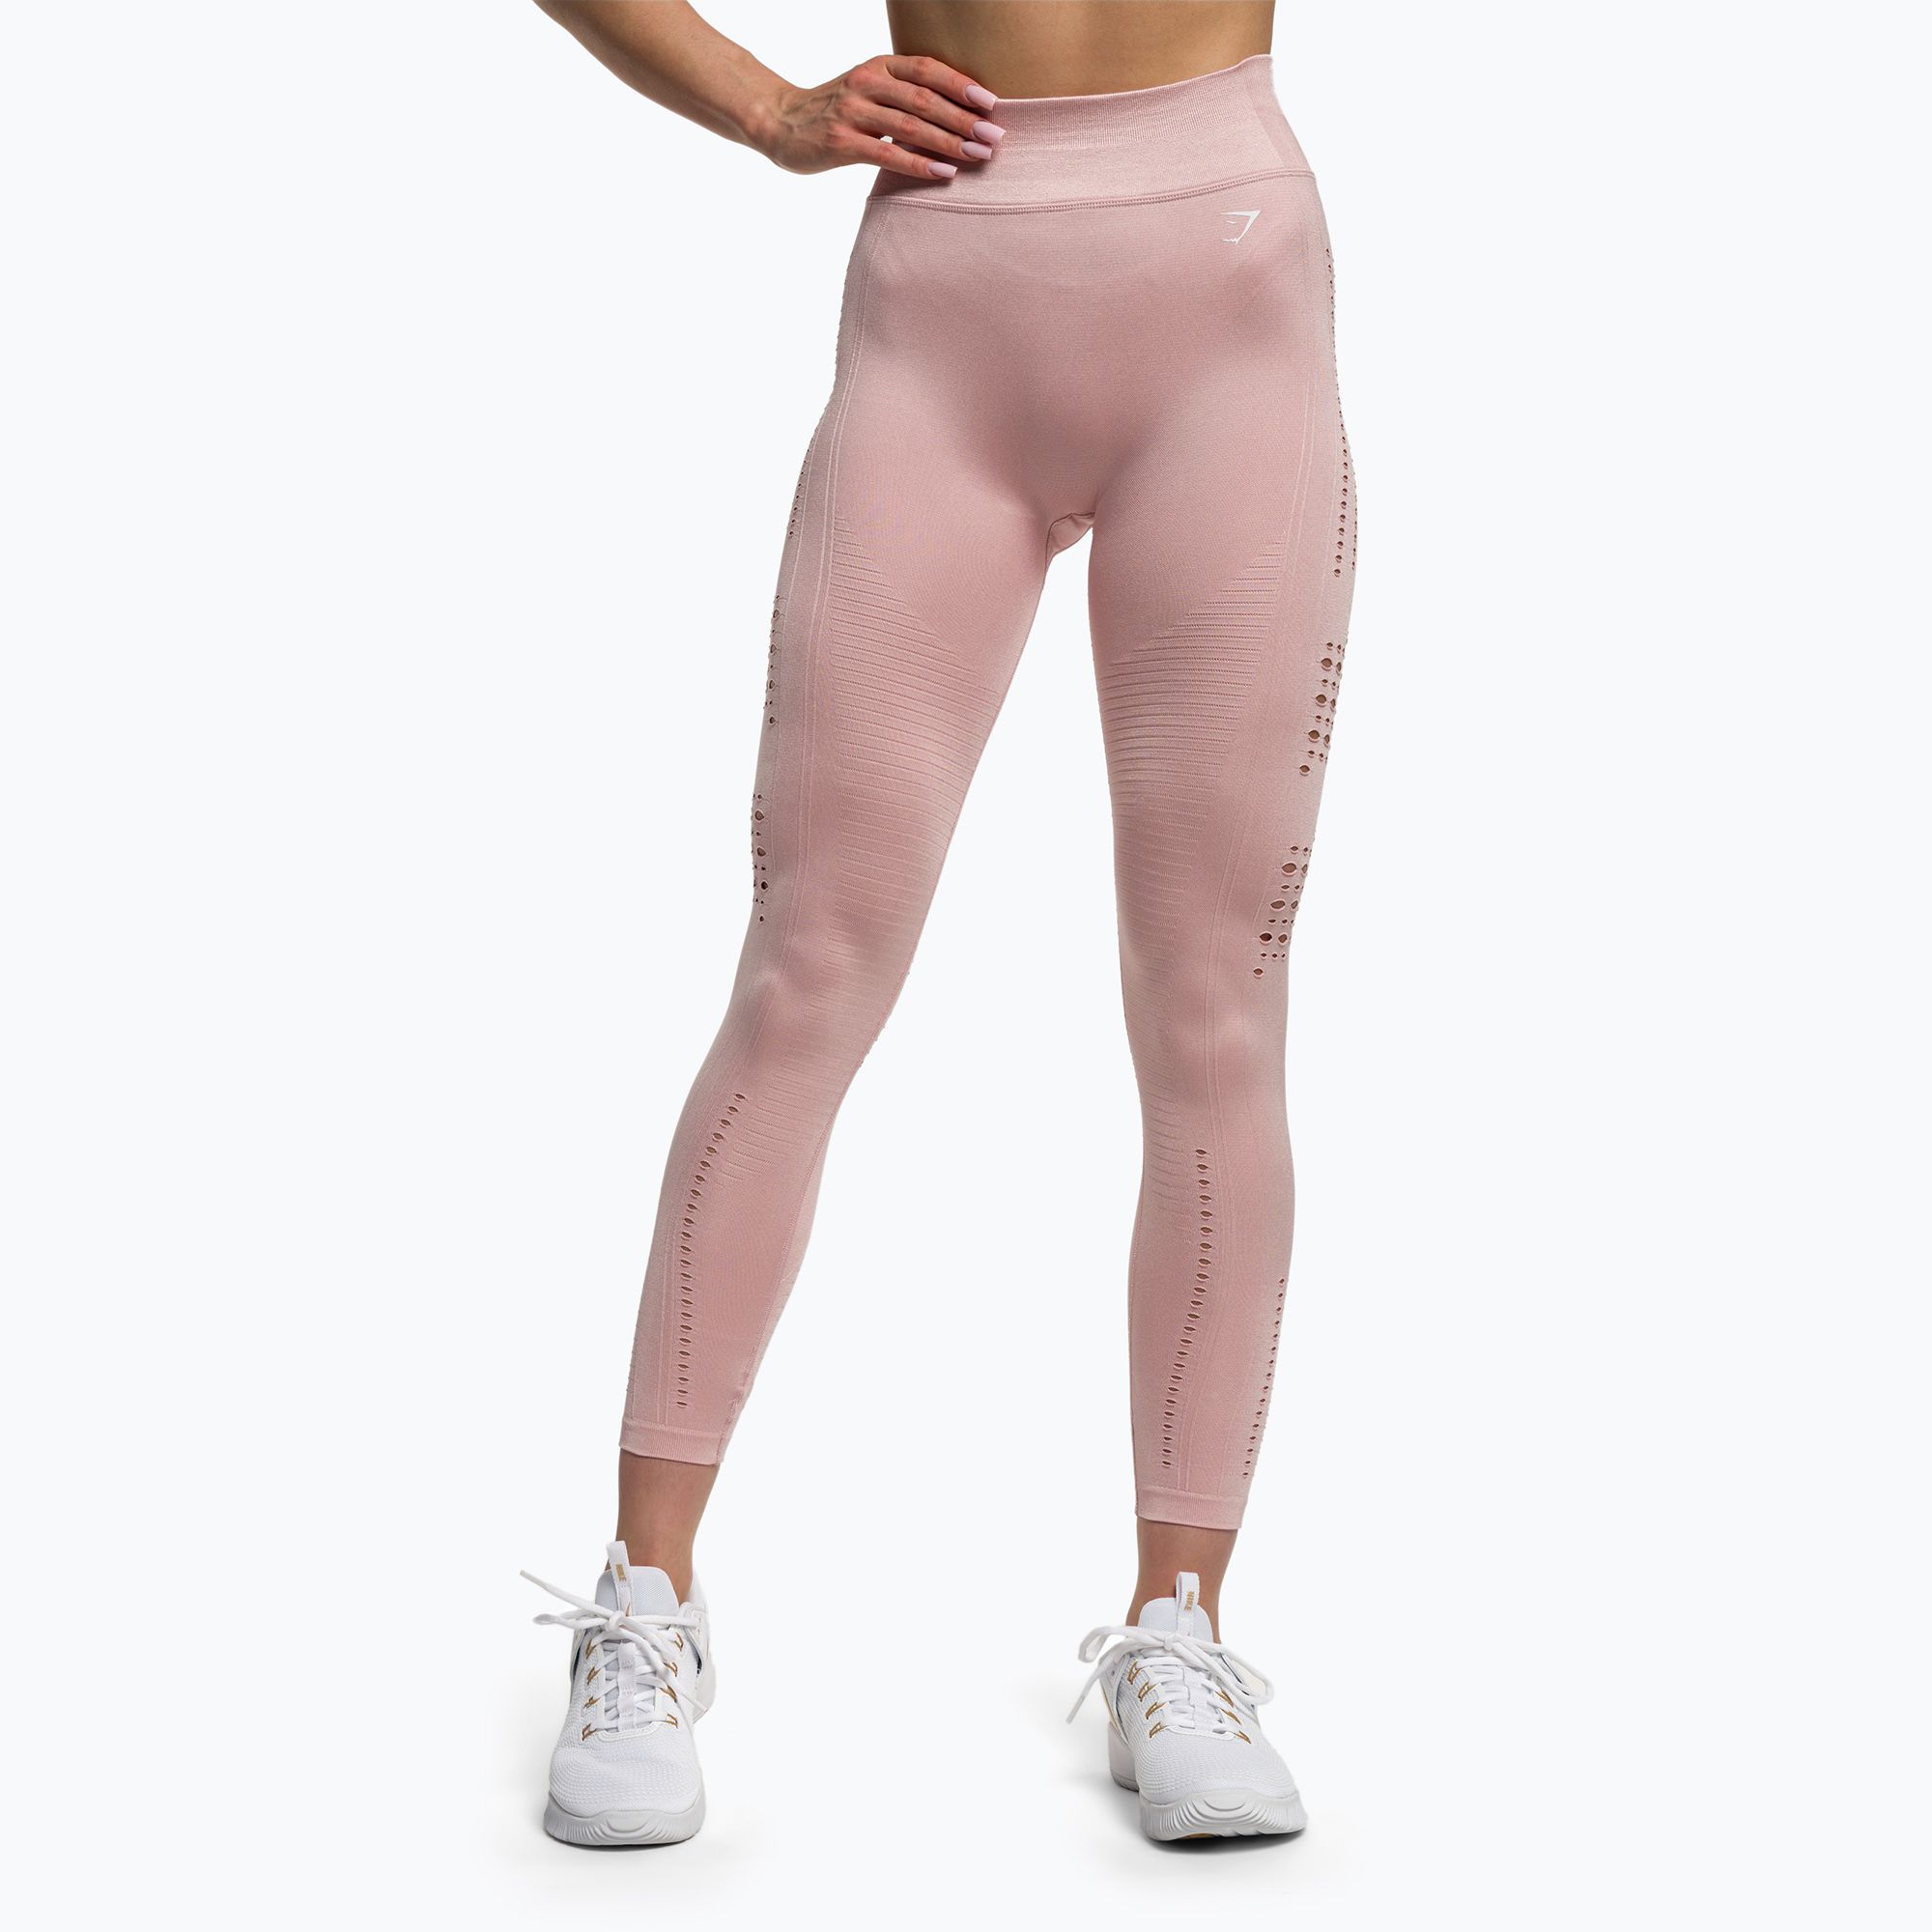 https://sportano.com/img/986c30c27a3d26a3ee16c136f92f4ff5/5/0/5057913377915_1-jpg/women-s-training-leggings-gymshark-flawless-shine-seamless-pink-white-0.jpg